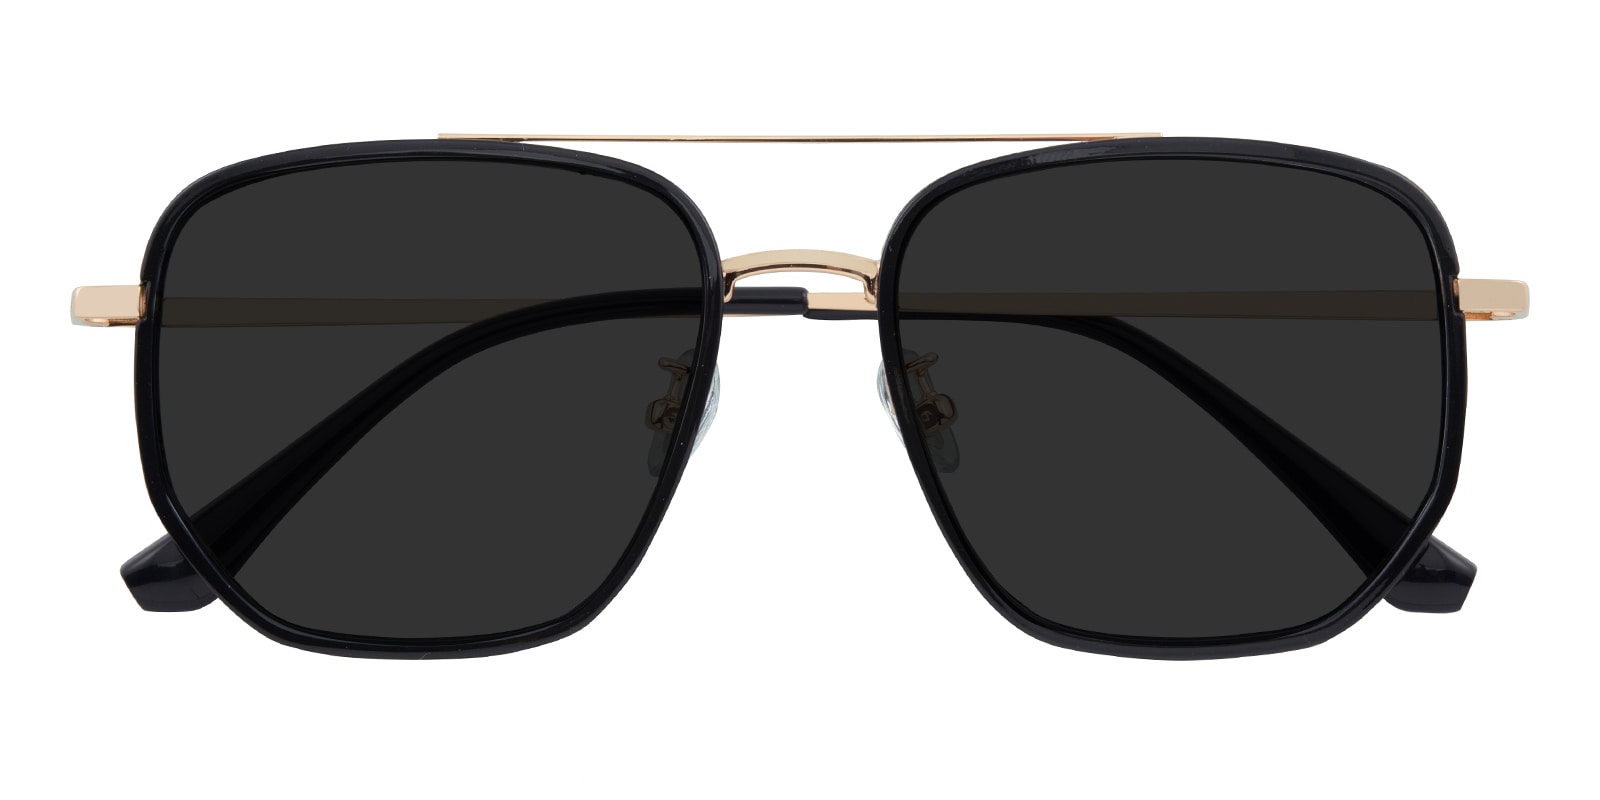 Aviator Sunglasses, Full Frame Black/Golden Titanium,blend Material - SUP1239